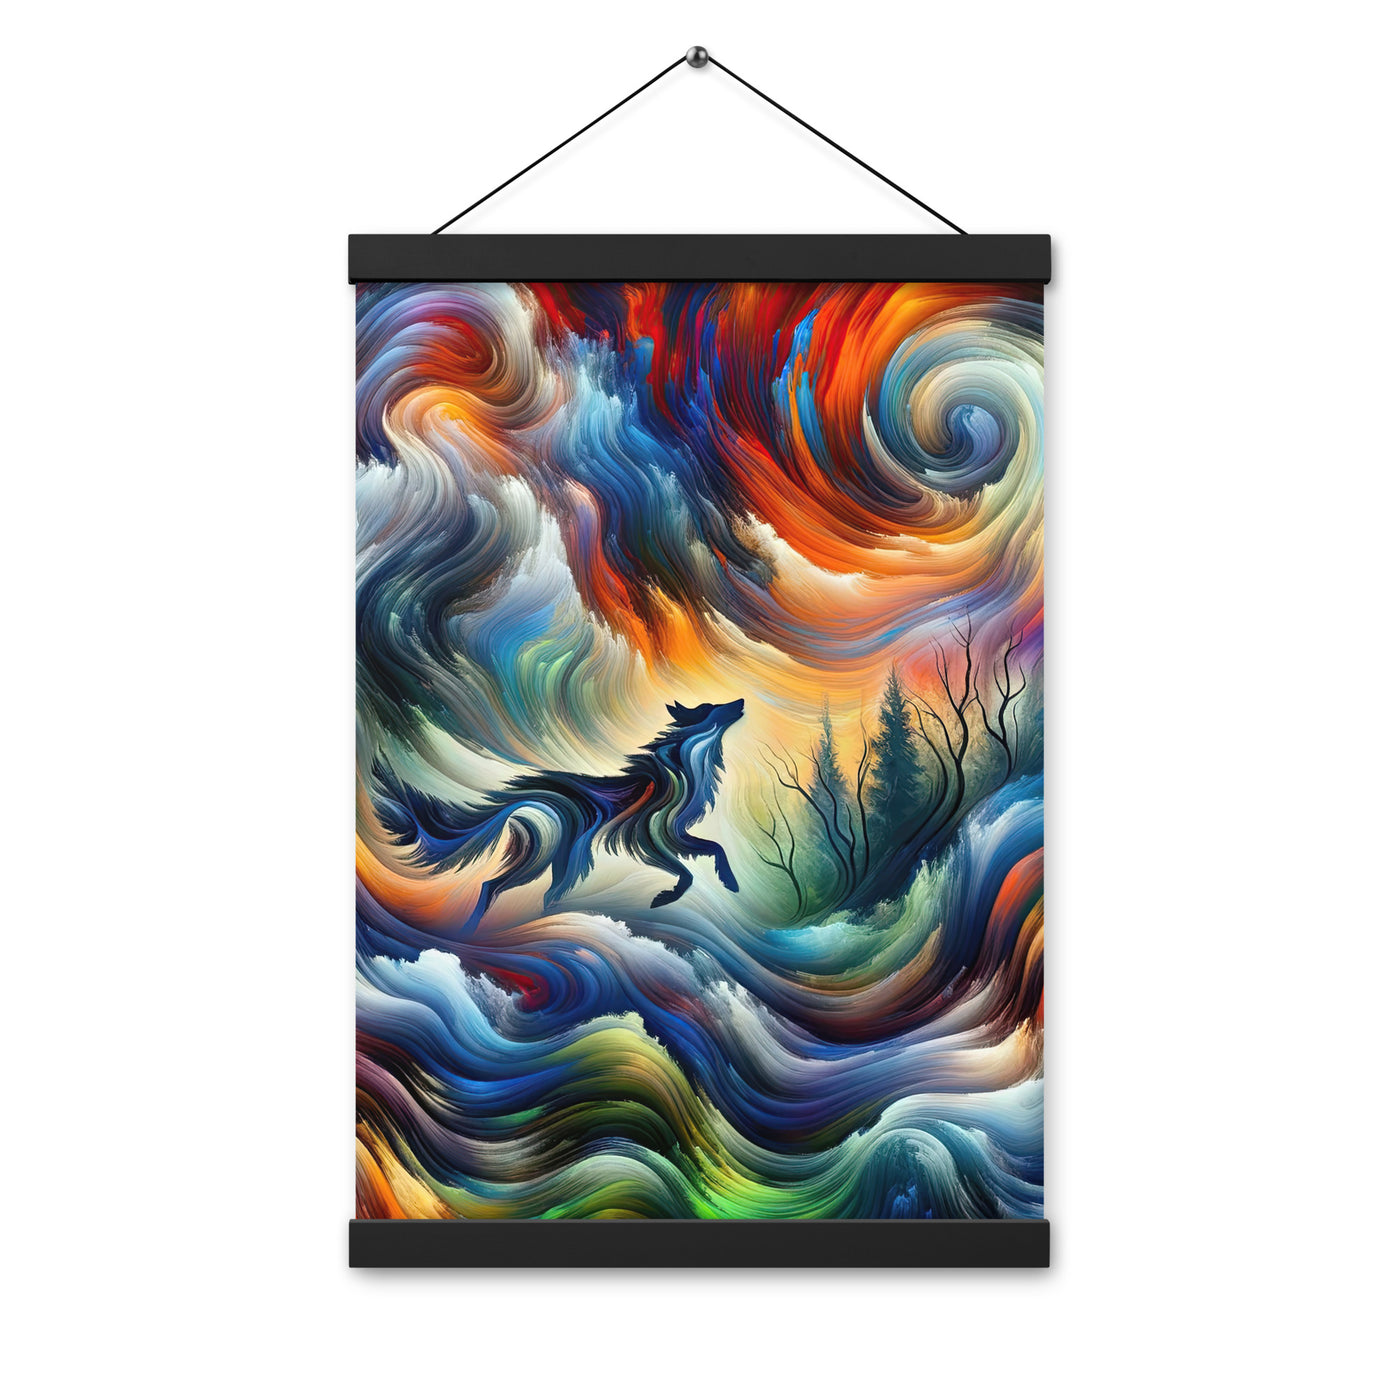 Alpen Abstraktgemälde mit Wolf Silhouette in lebhaften Farben (AN) - Premium Poster mit Aufhängung xxx yyy zzz 30.5 x 45.7 cm